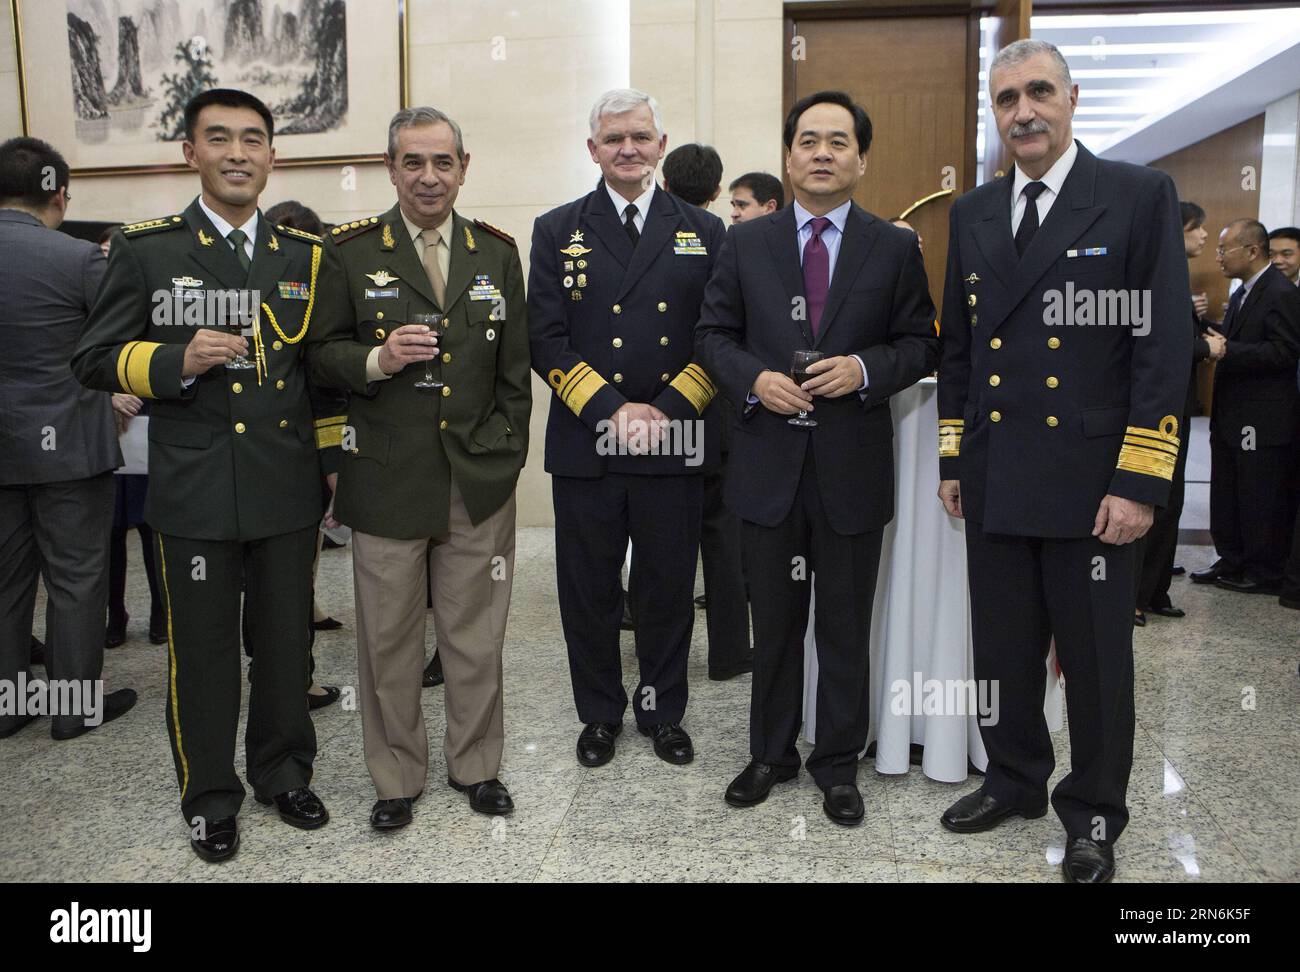 Tao Xiangyang (1e L), attaché militaire de l ambassade de Chine en Argentine, Luis Maria Carena (2e L), chef des chefs d état-major interarmées argentins, et Yang Wanming (2e R), ambassadeur de Chine en Argentine, pose lors d'un événement pour célébrer le 88e anniversaire de la fondation de l'Armée populaire de libération (APL) de Chine, à l'ambassade de Chine à Buenos Aires, capitale de l'Argentine, le 30 juillet 2015. Martin Zabala) (fnc) ARGENTINA-BUENOS AIRES-CHINA-PLA-ANNIVERSARY e MARTINxZABALA PUBLICATIONxNOTxINxCHN Tao Xiang Yang 1st l attaché militaire de l'ambassade de Chine en Argentine Luis Mary Care Banque D'Images